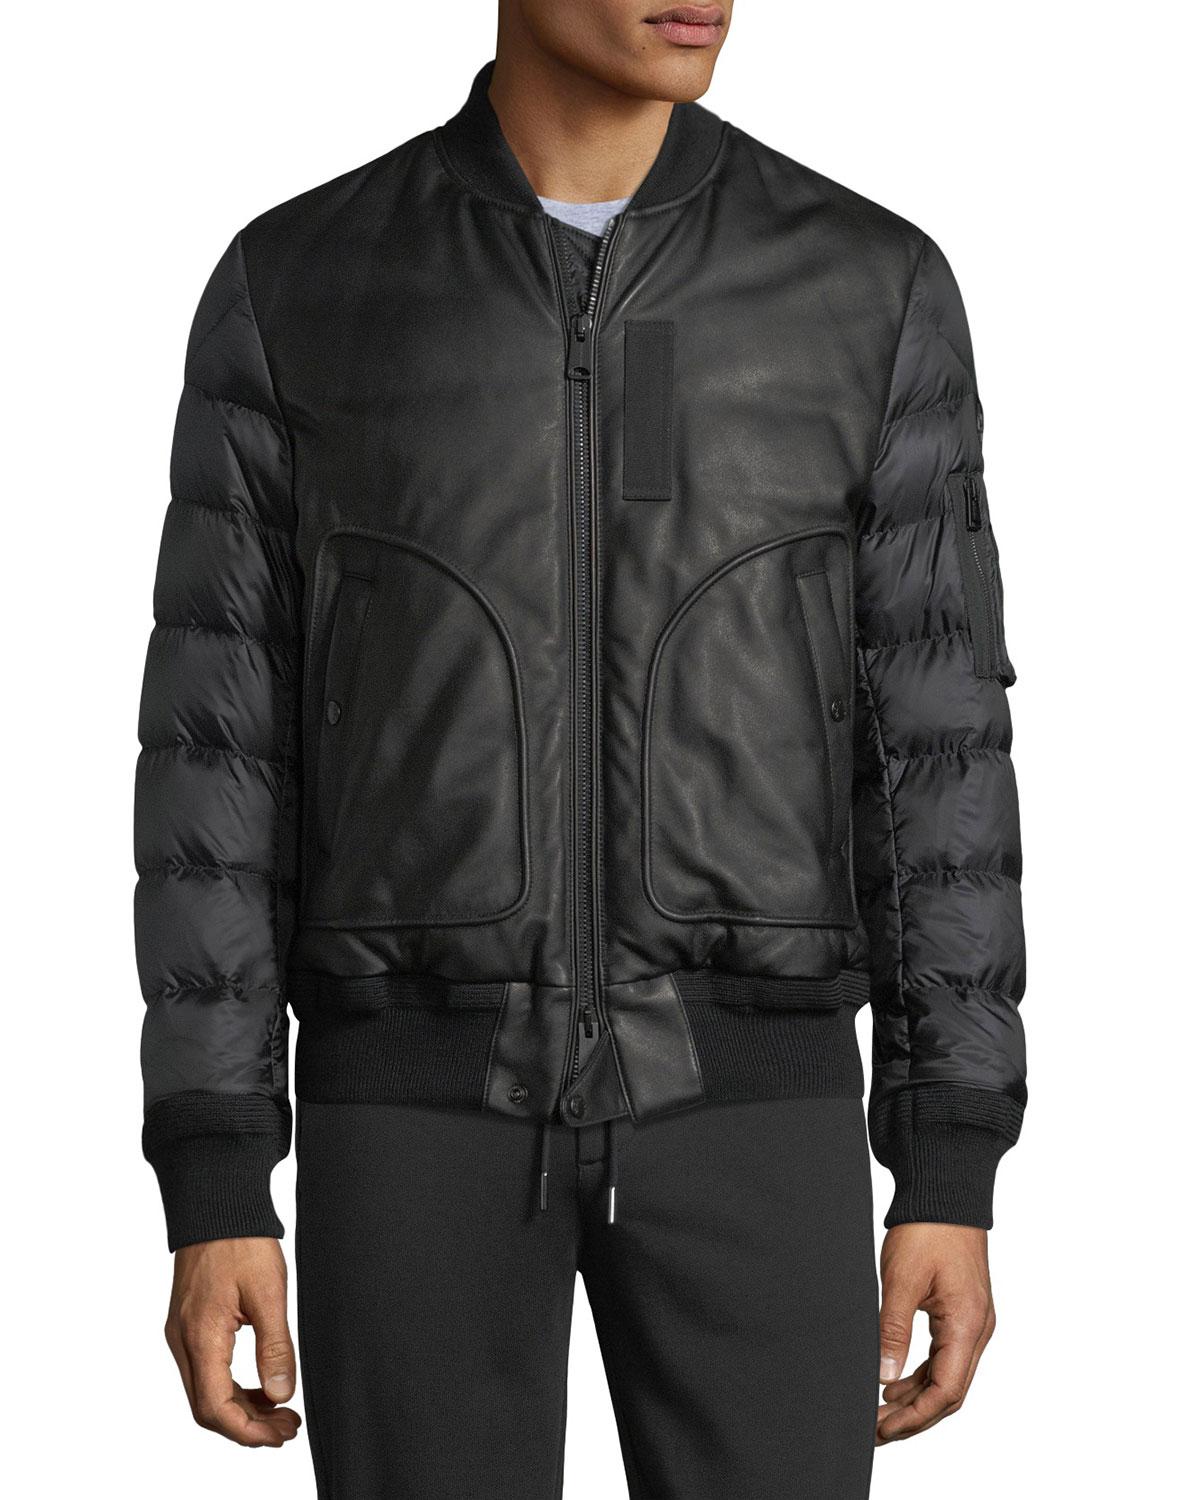 Lyst - Moncler Bertrand Leather Jacket in Black for Men